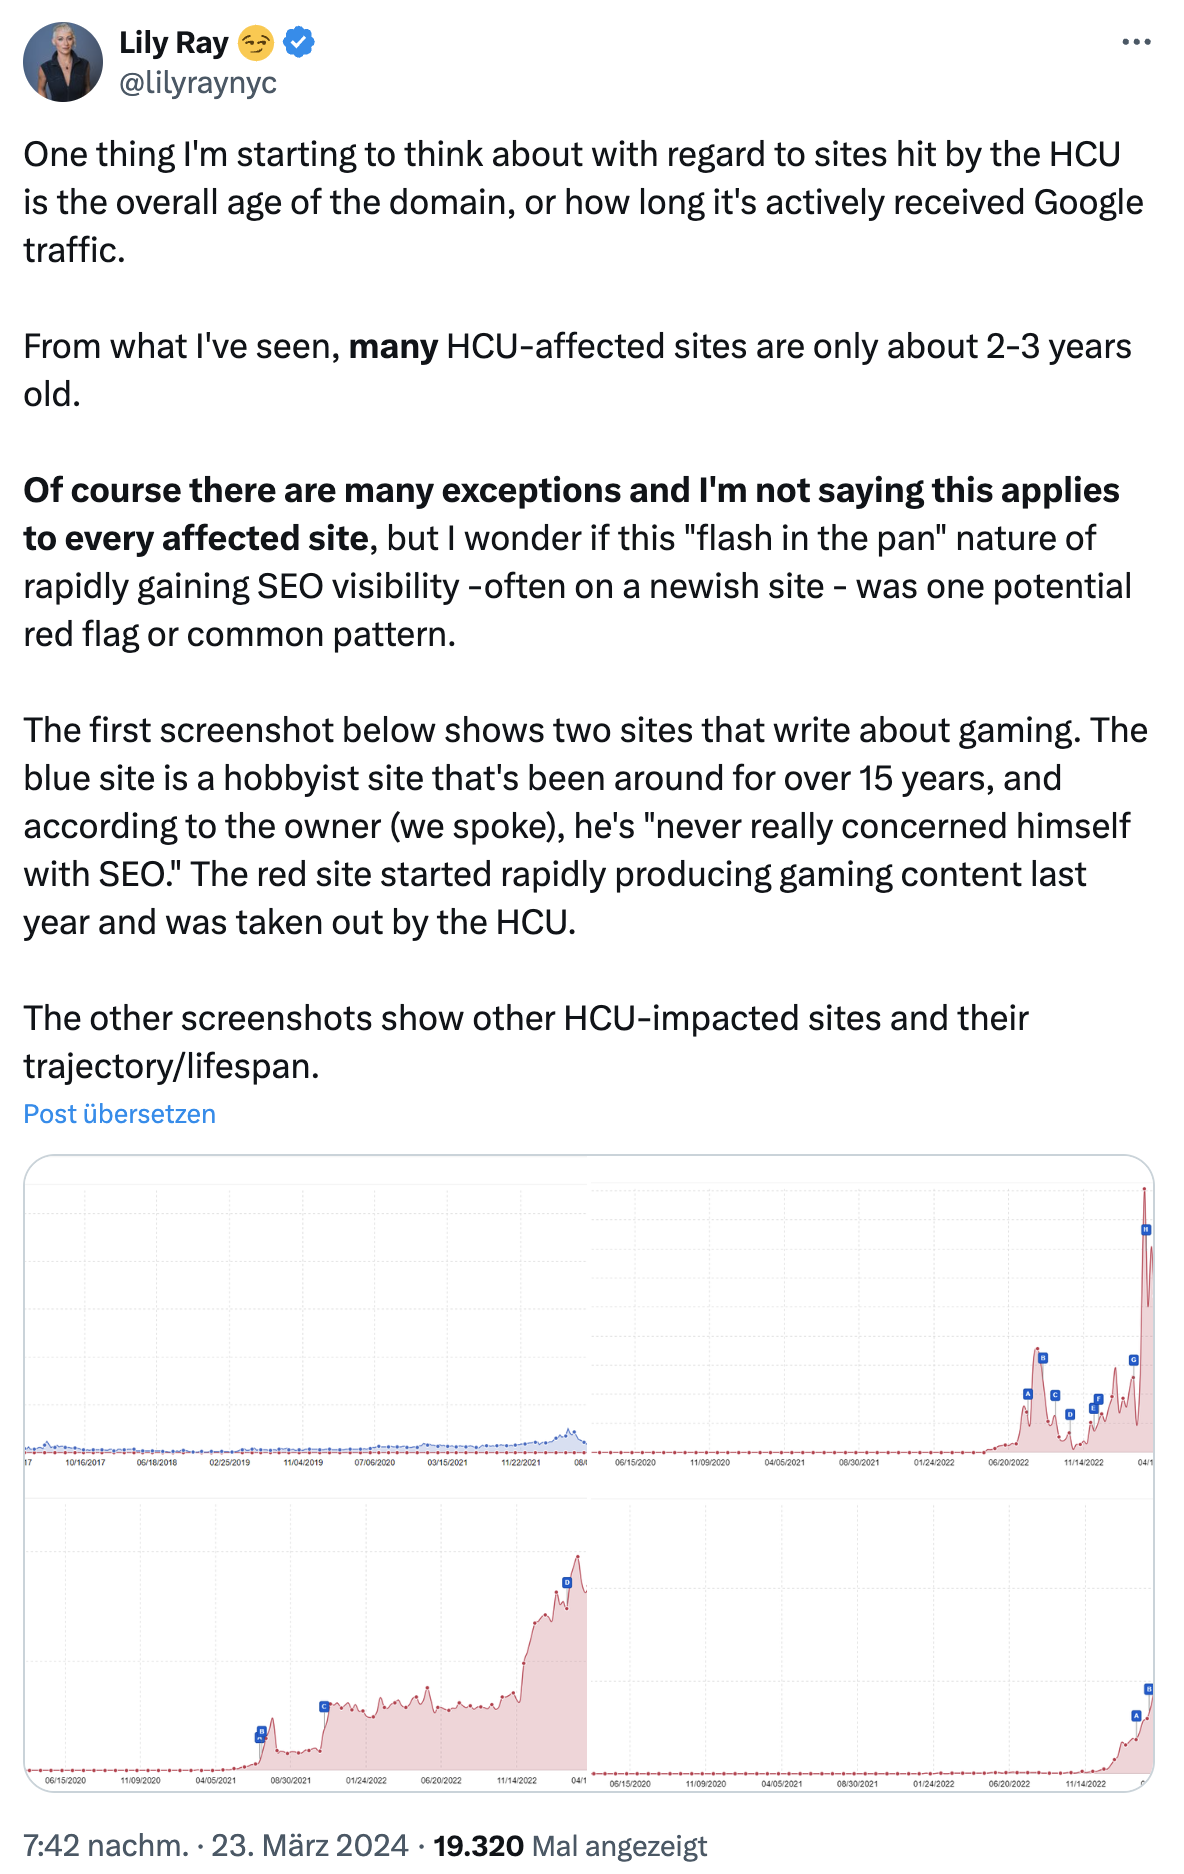 Google: Spielt das Alter einer Website eine Rolle bei der Bewertung von Helpful Content? SEO Lily Ray auf Twitter